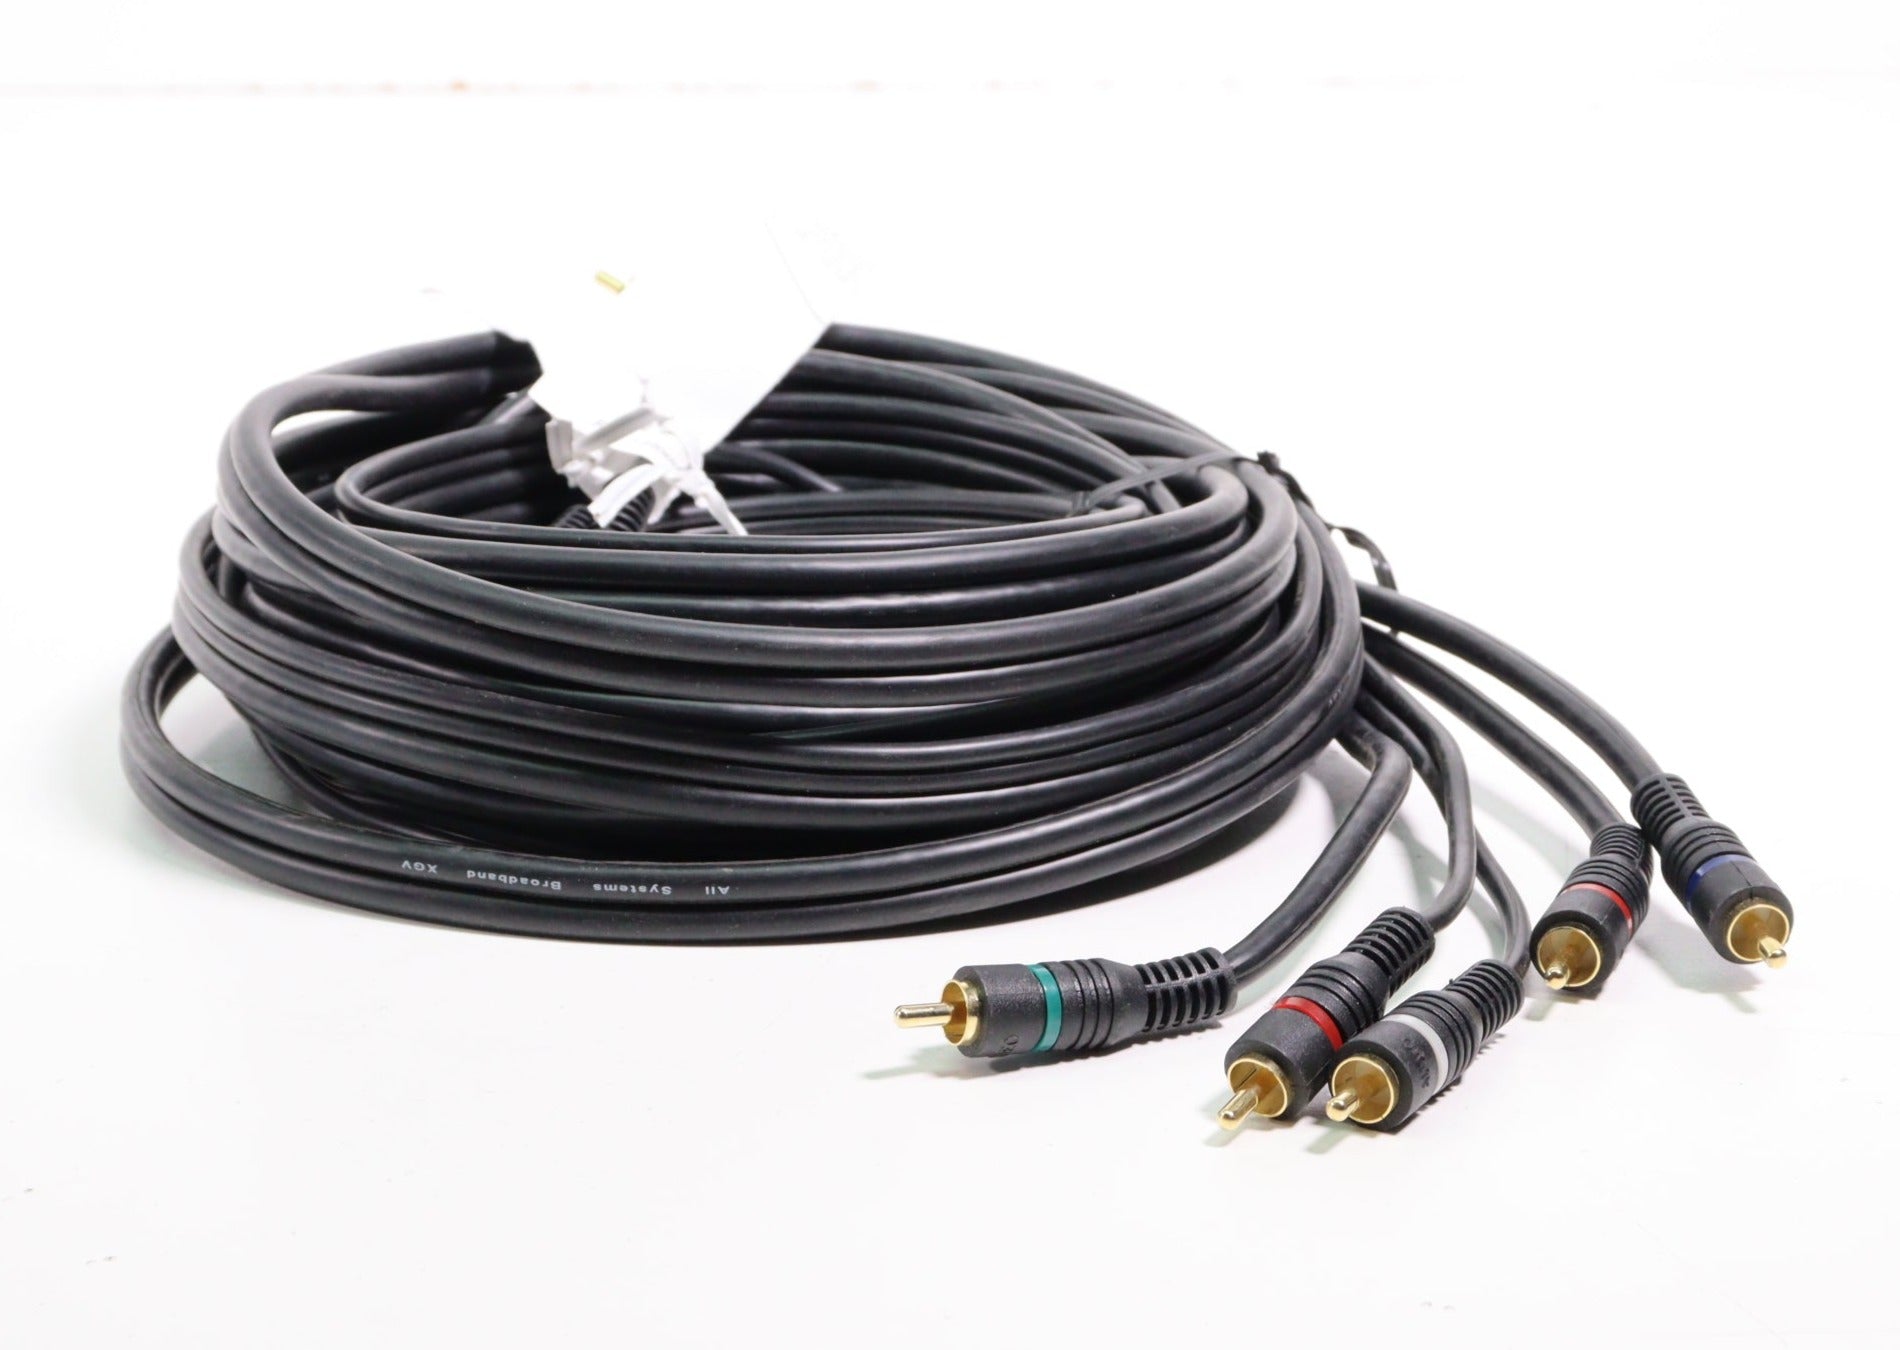 Cable 3 RCA a 3 RCA 1,5mts (0033)